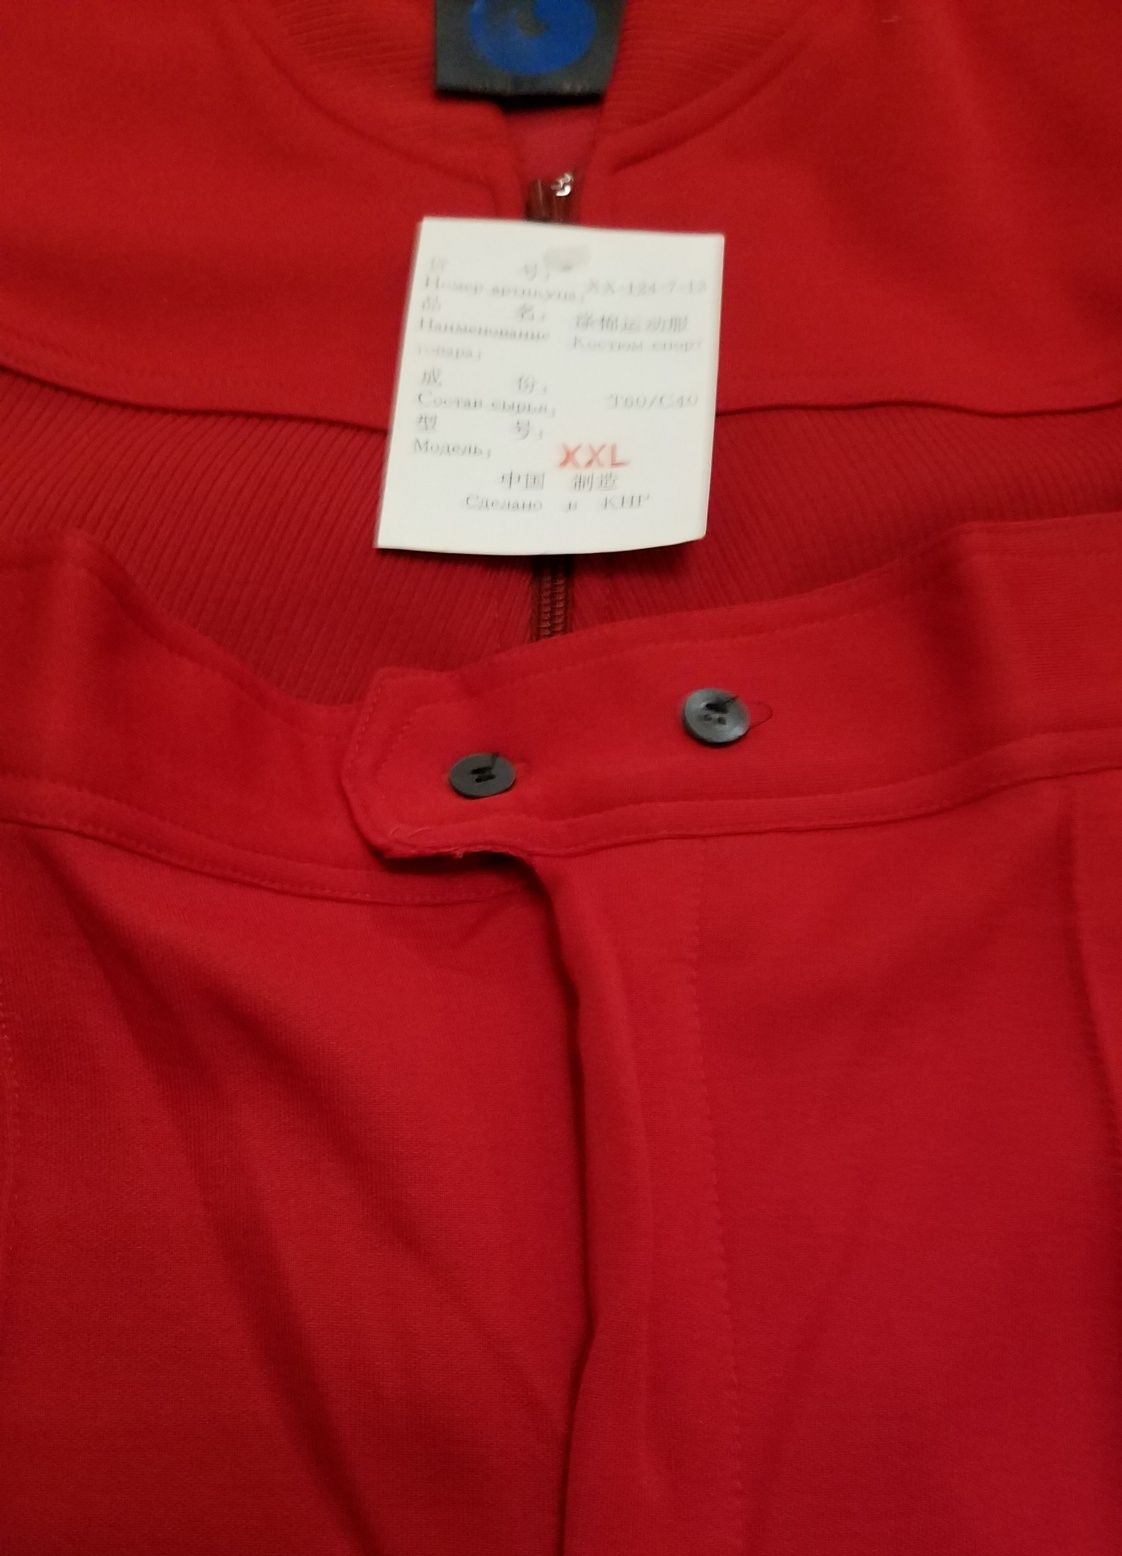 Спортивный костюм красного цвета размера XXL